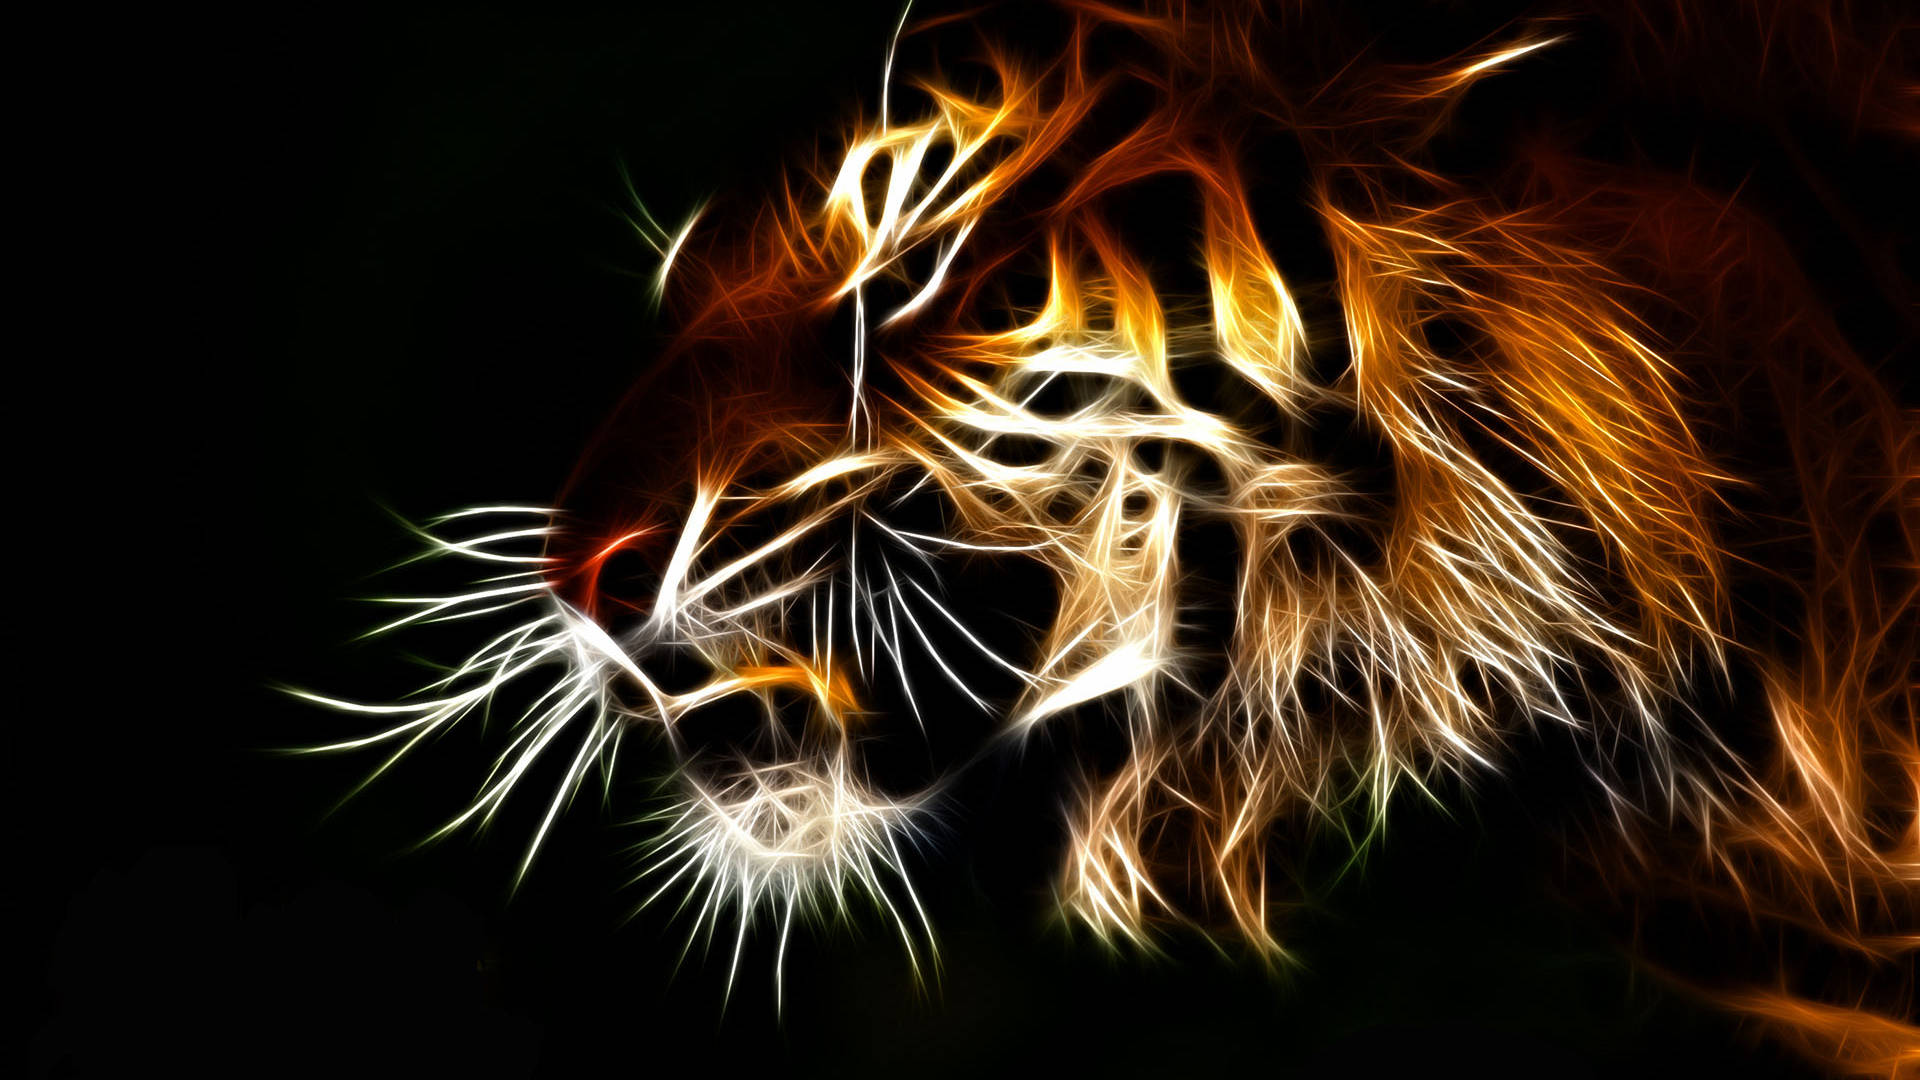 Cool Artistic Tiger Portrait Wallpaper